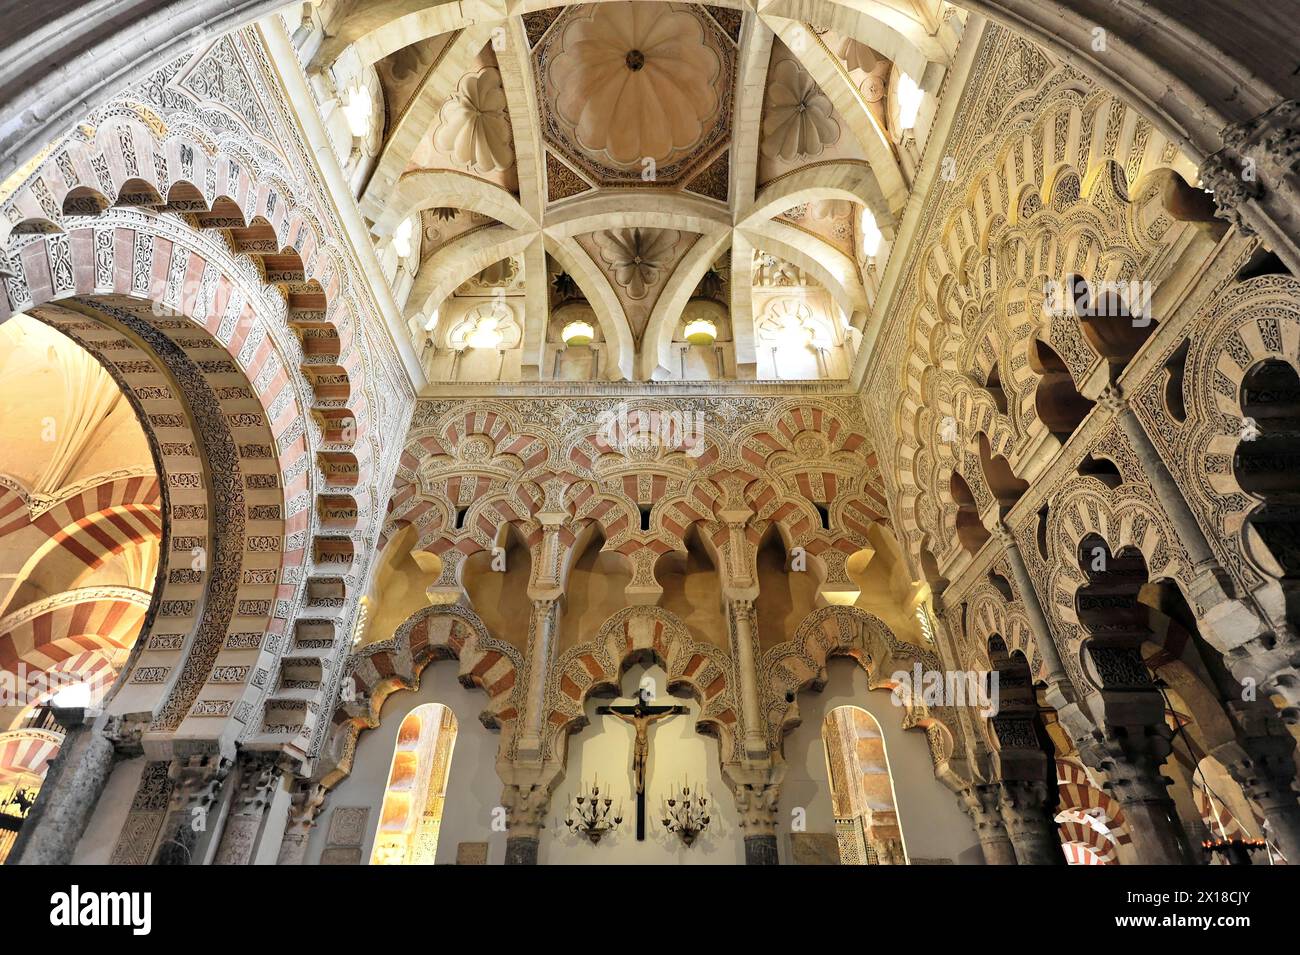 Mezquita, ehemalige Moschee, heute Kathedrale, Cordoba, Innenansicht eines Gebäudes, das islamische und christliche Designelemente mit kunstvollen Bögen kombiniert Stockfoto